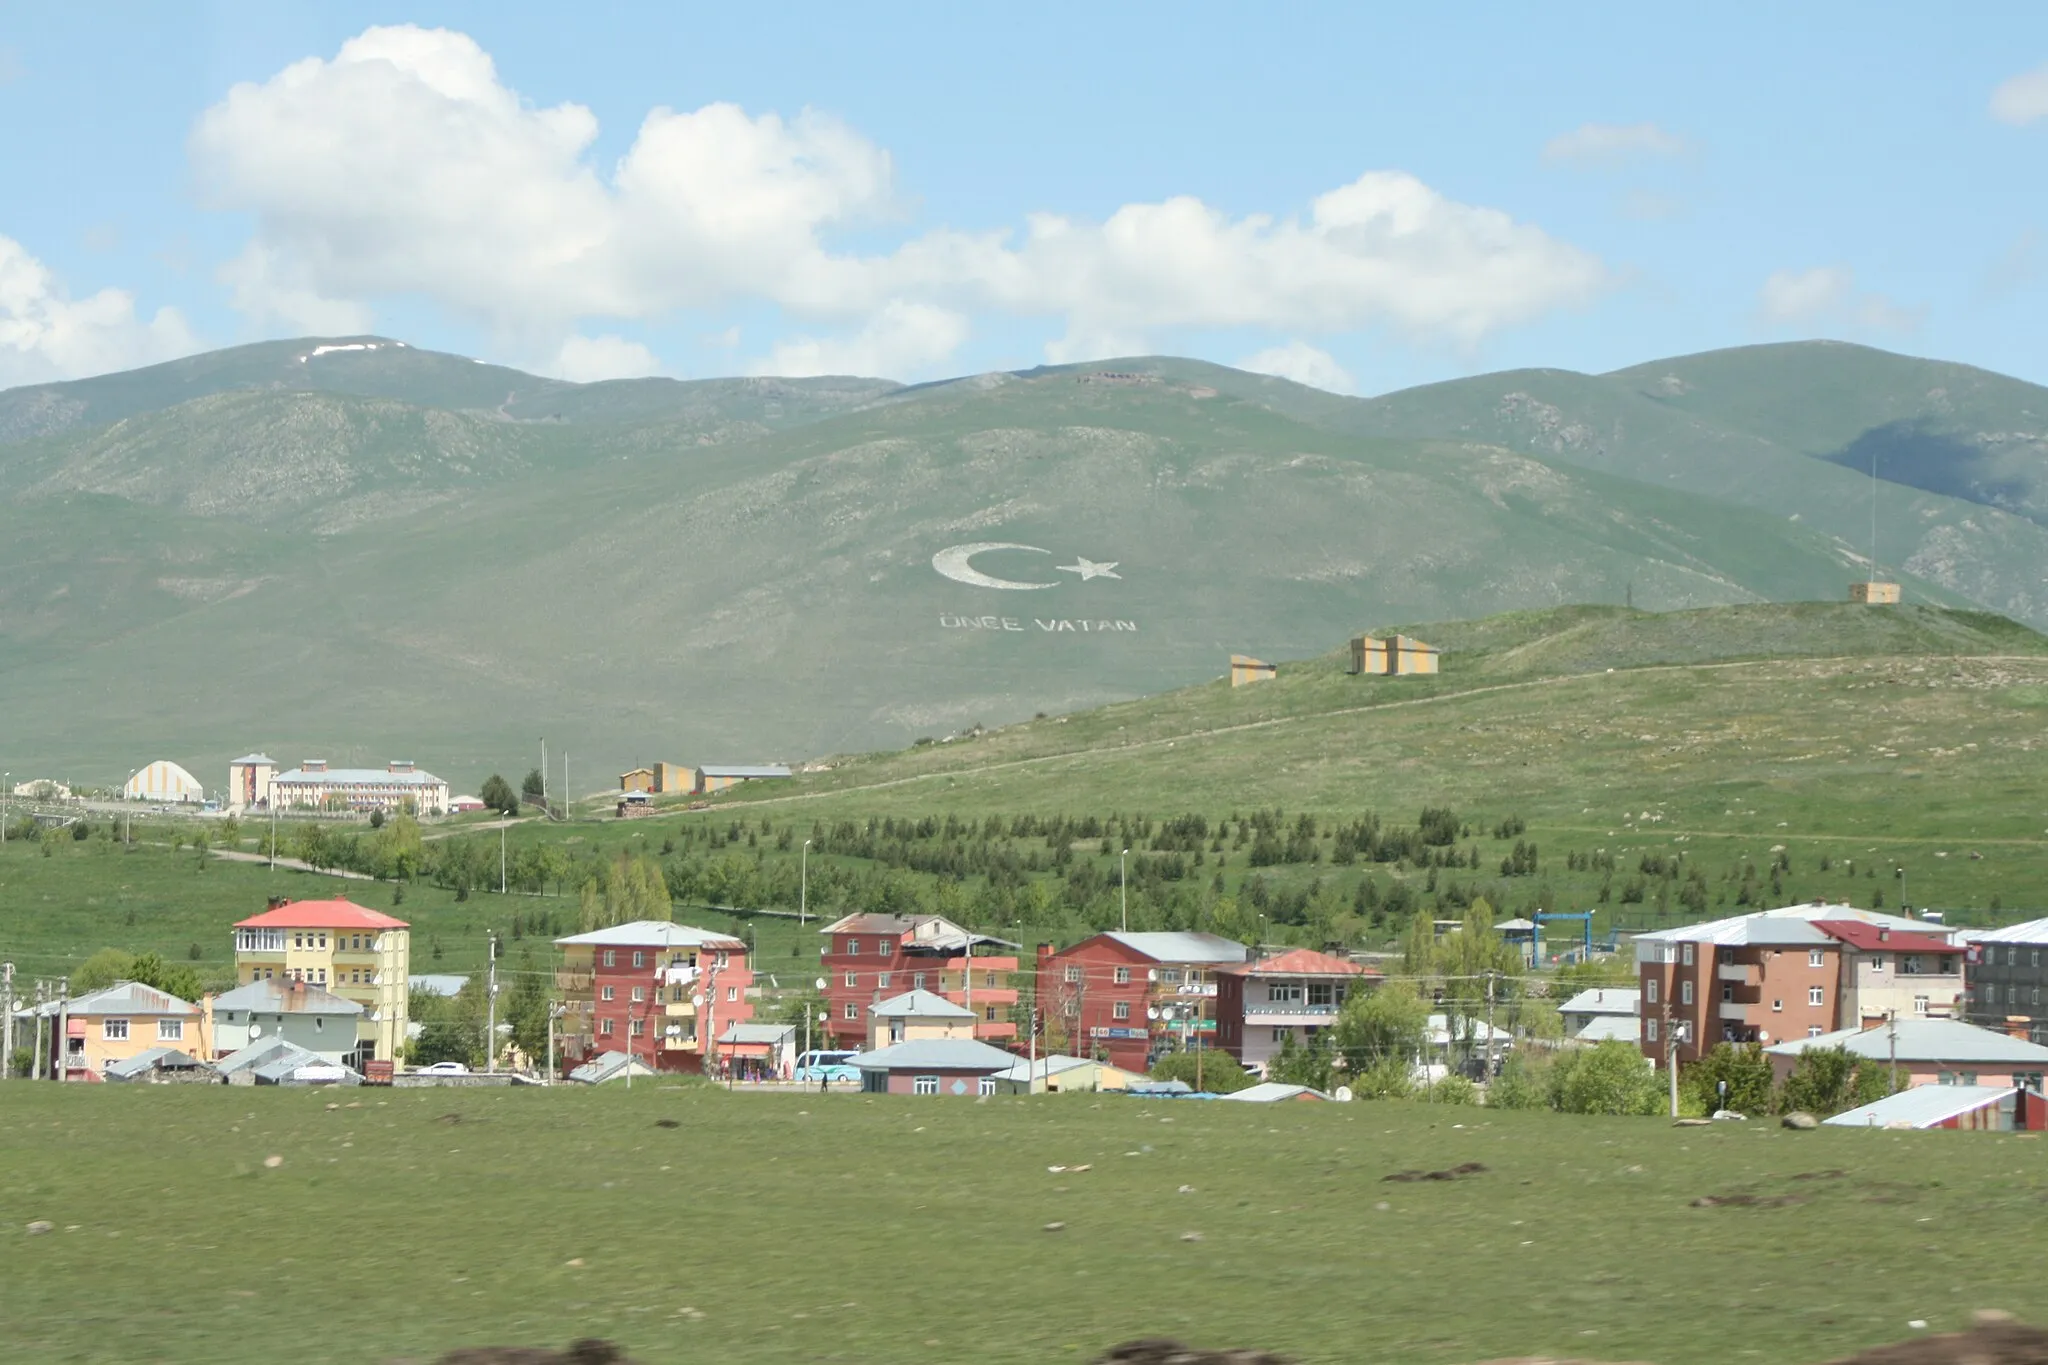 Photo showing: ქალაქ არტაანის ნაწილი, მთაზე გამოკვეთილი ნახევარმთვარისა და წარწერის "წინ სამშობლოვ" ფონზე.